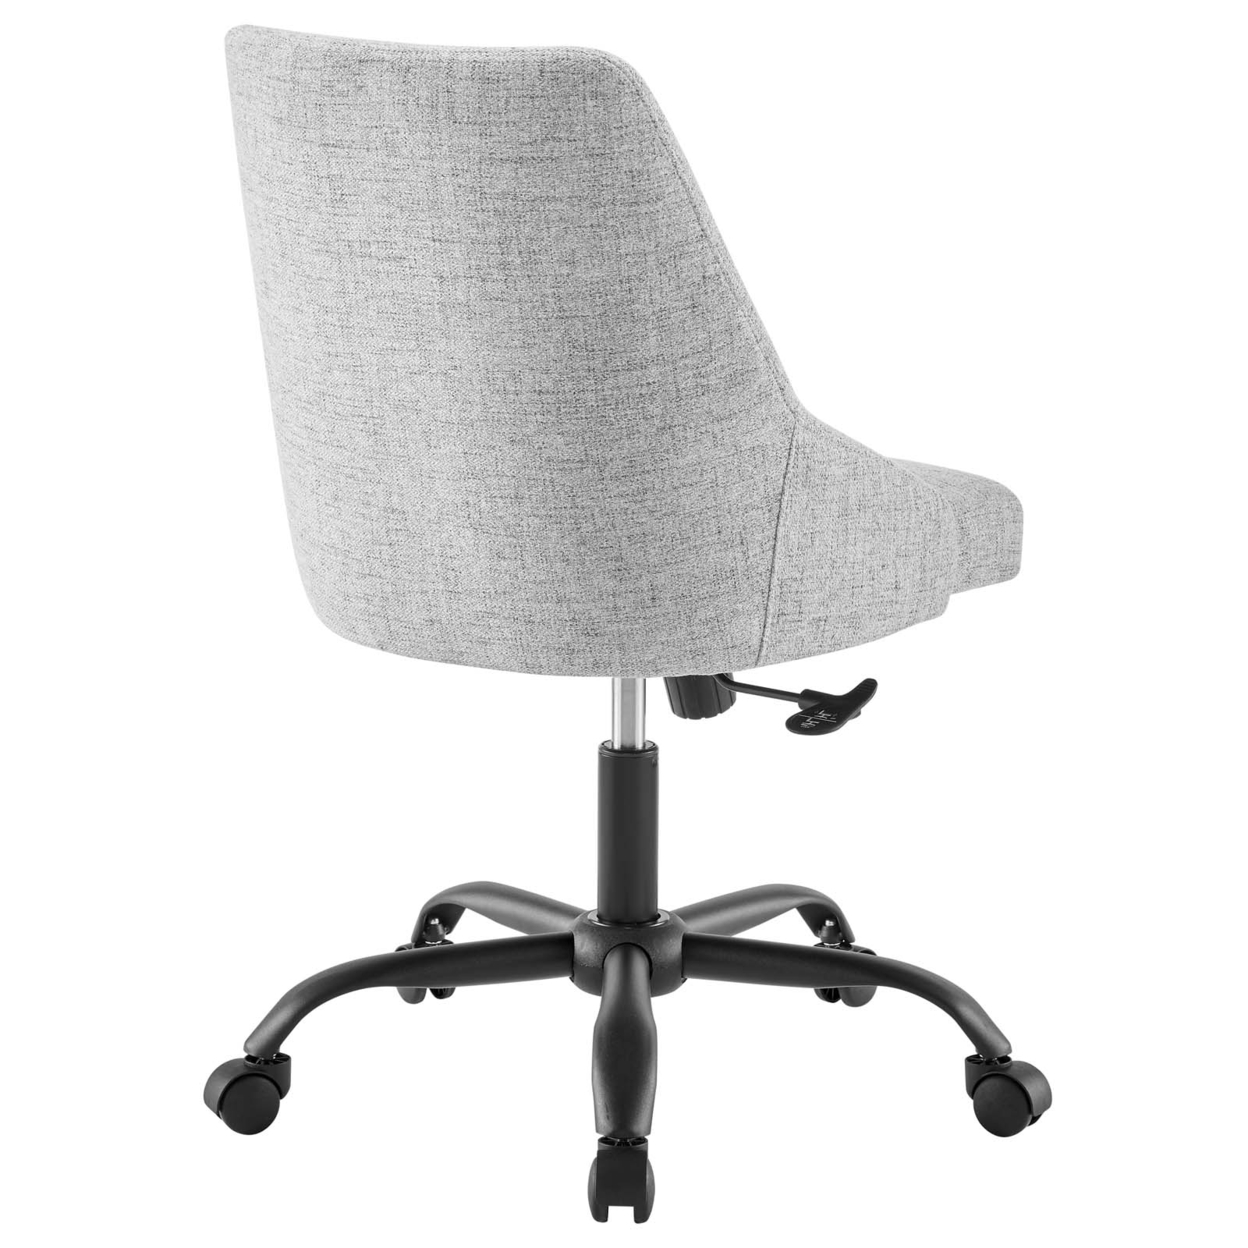 Designate Swivel Upholstered Office Chair, Black Gray